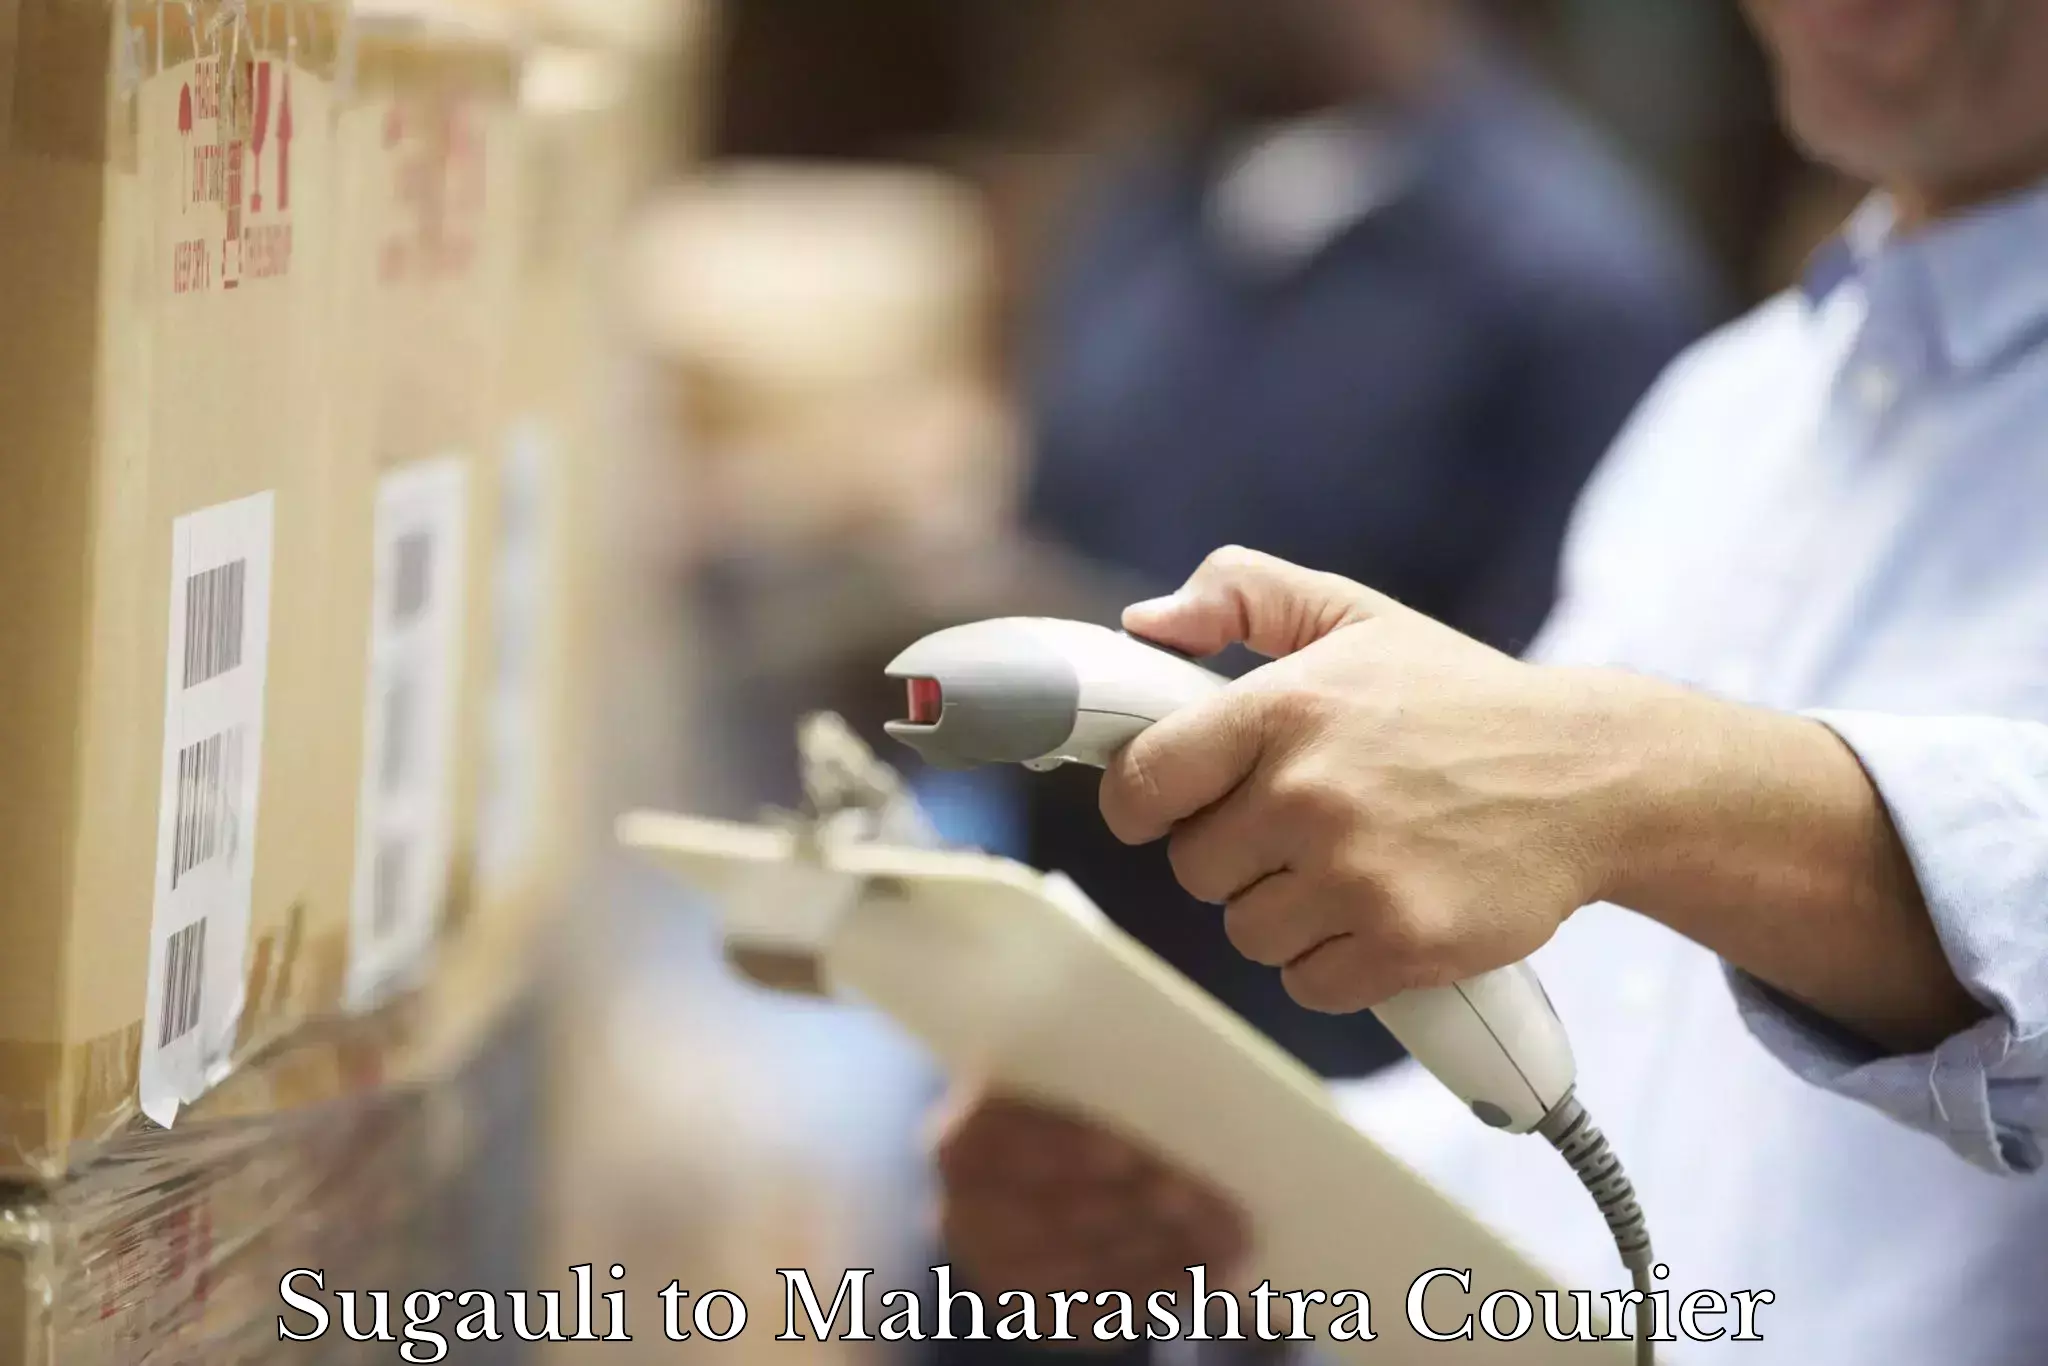 Global shipping networks Sugauli to Maharashtra